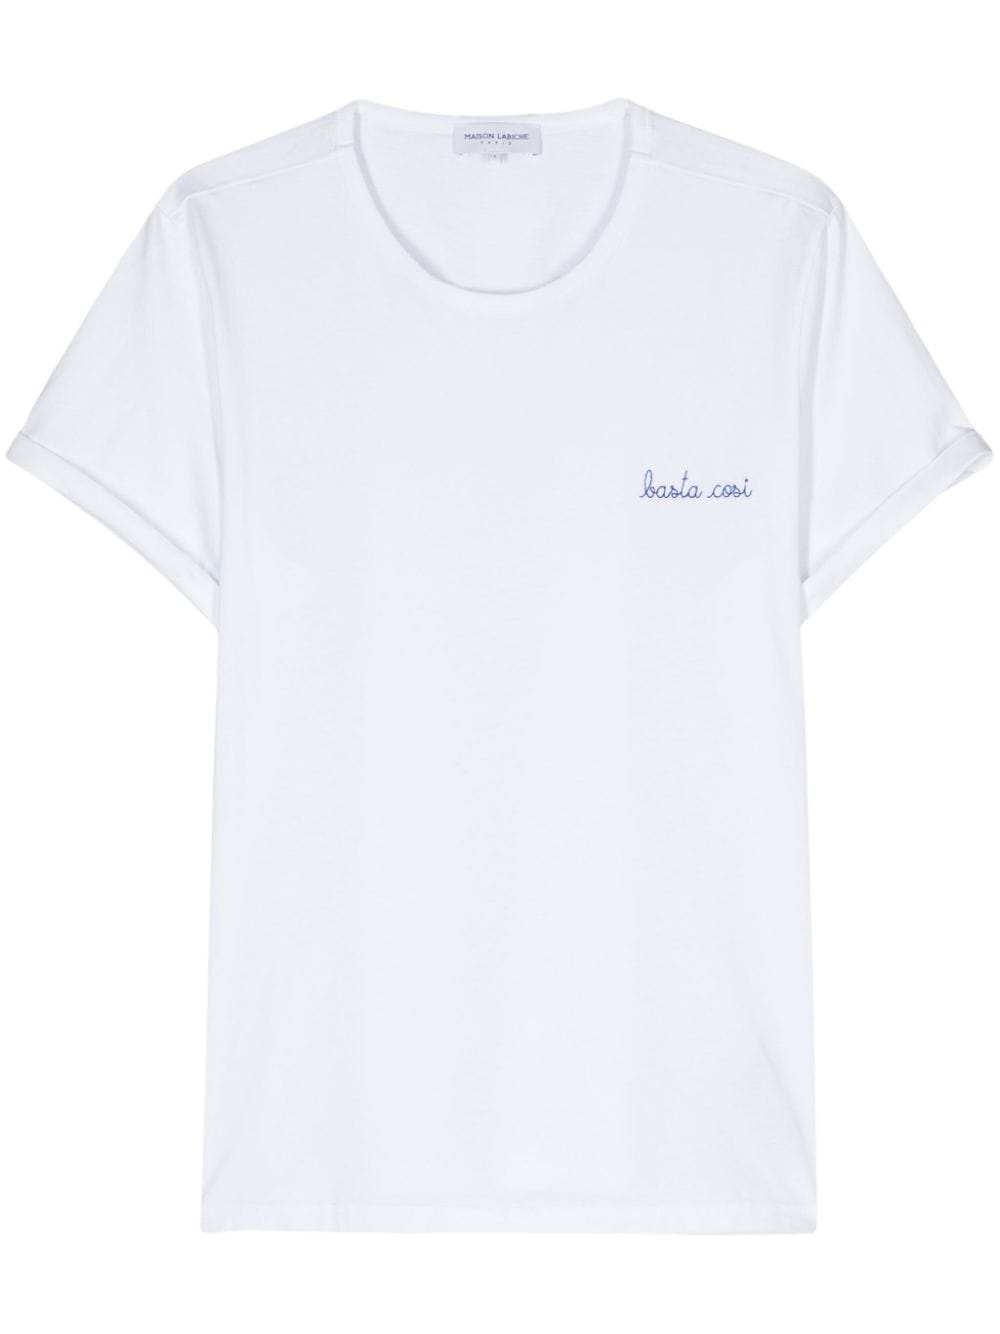 Poitou Basta Cosi-embroidered T-shirt